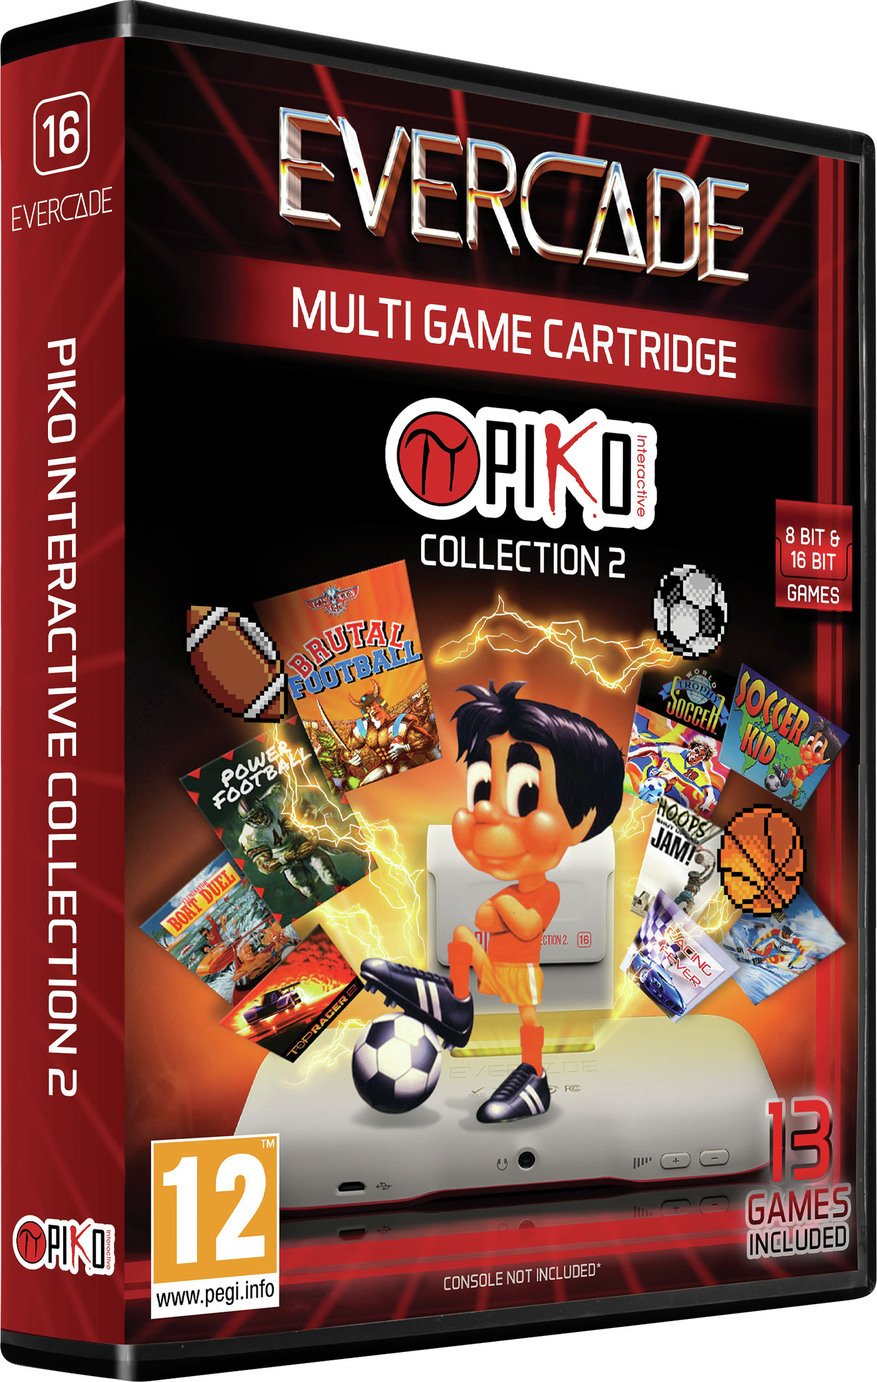 Evercade Cartridge Piko Interactive Collection 2